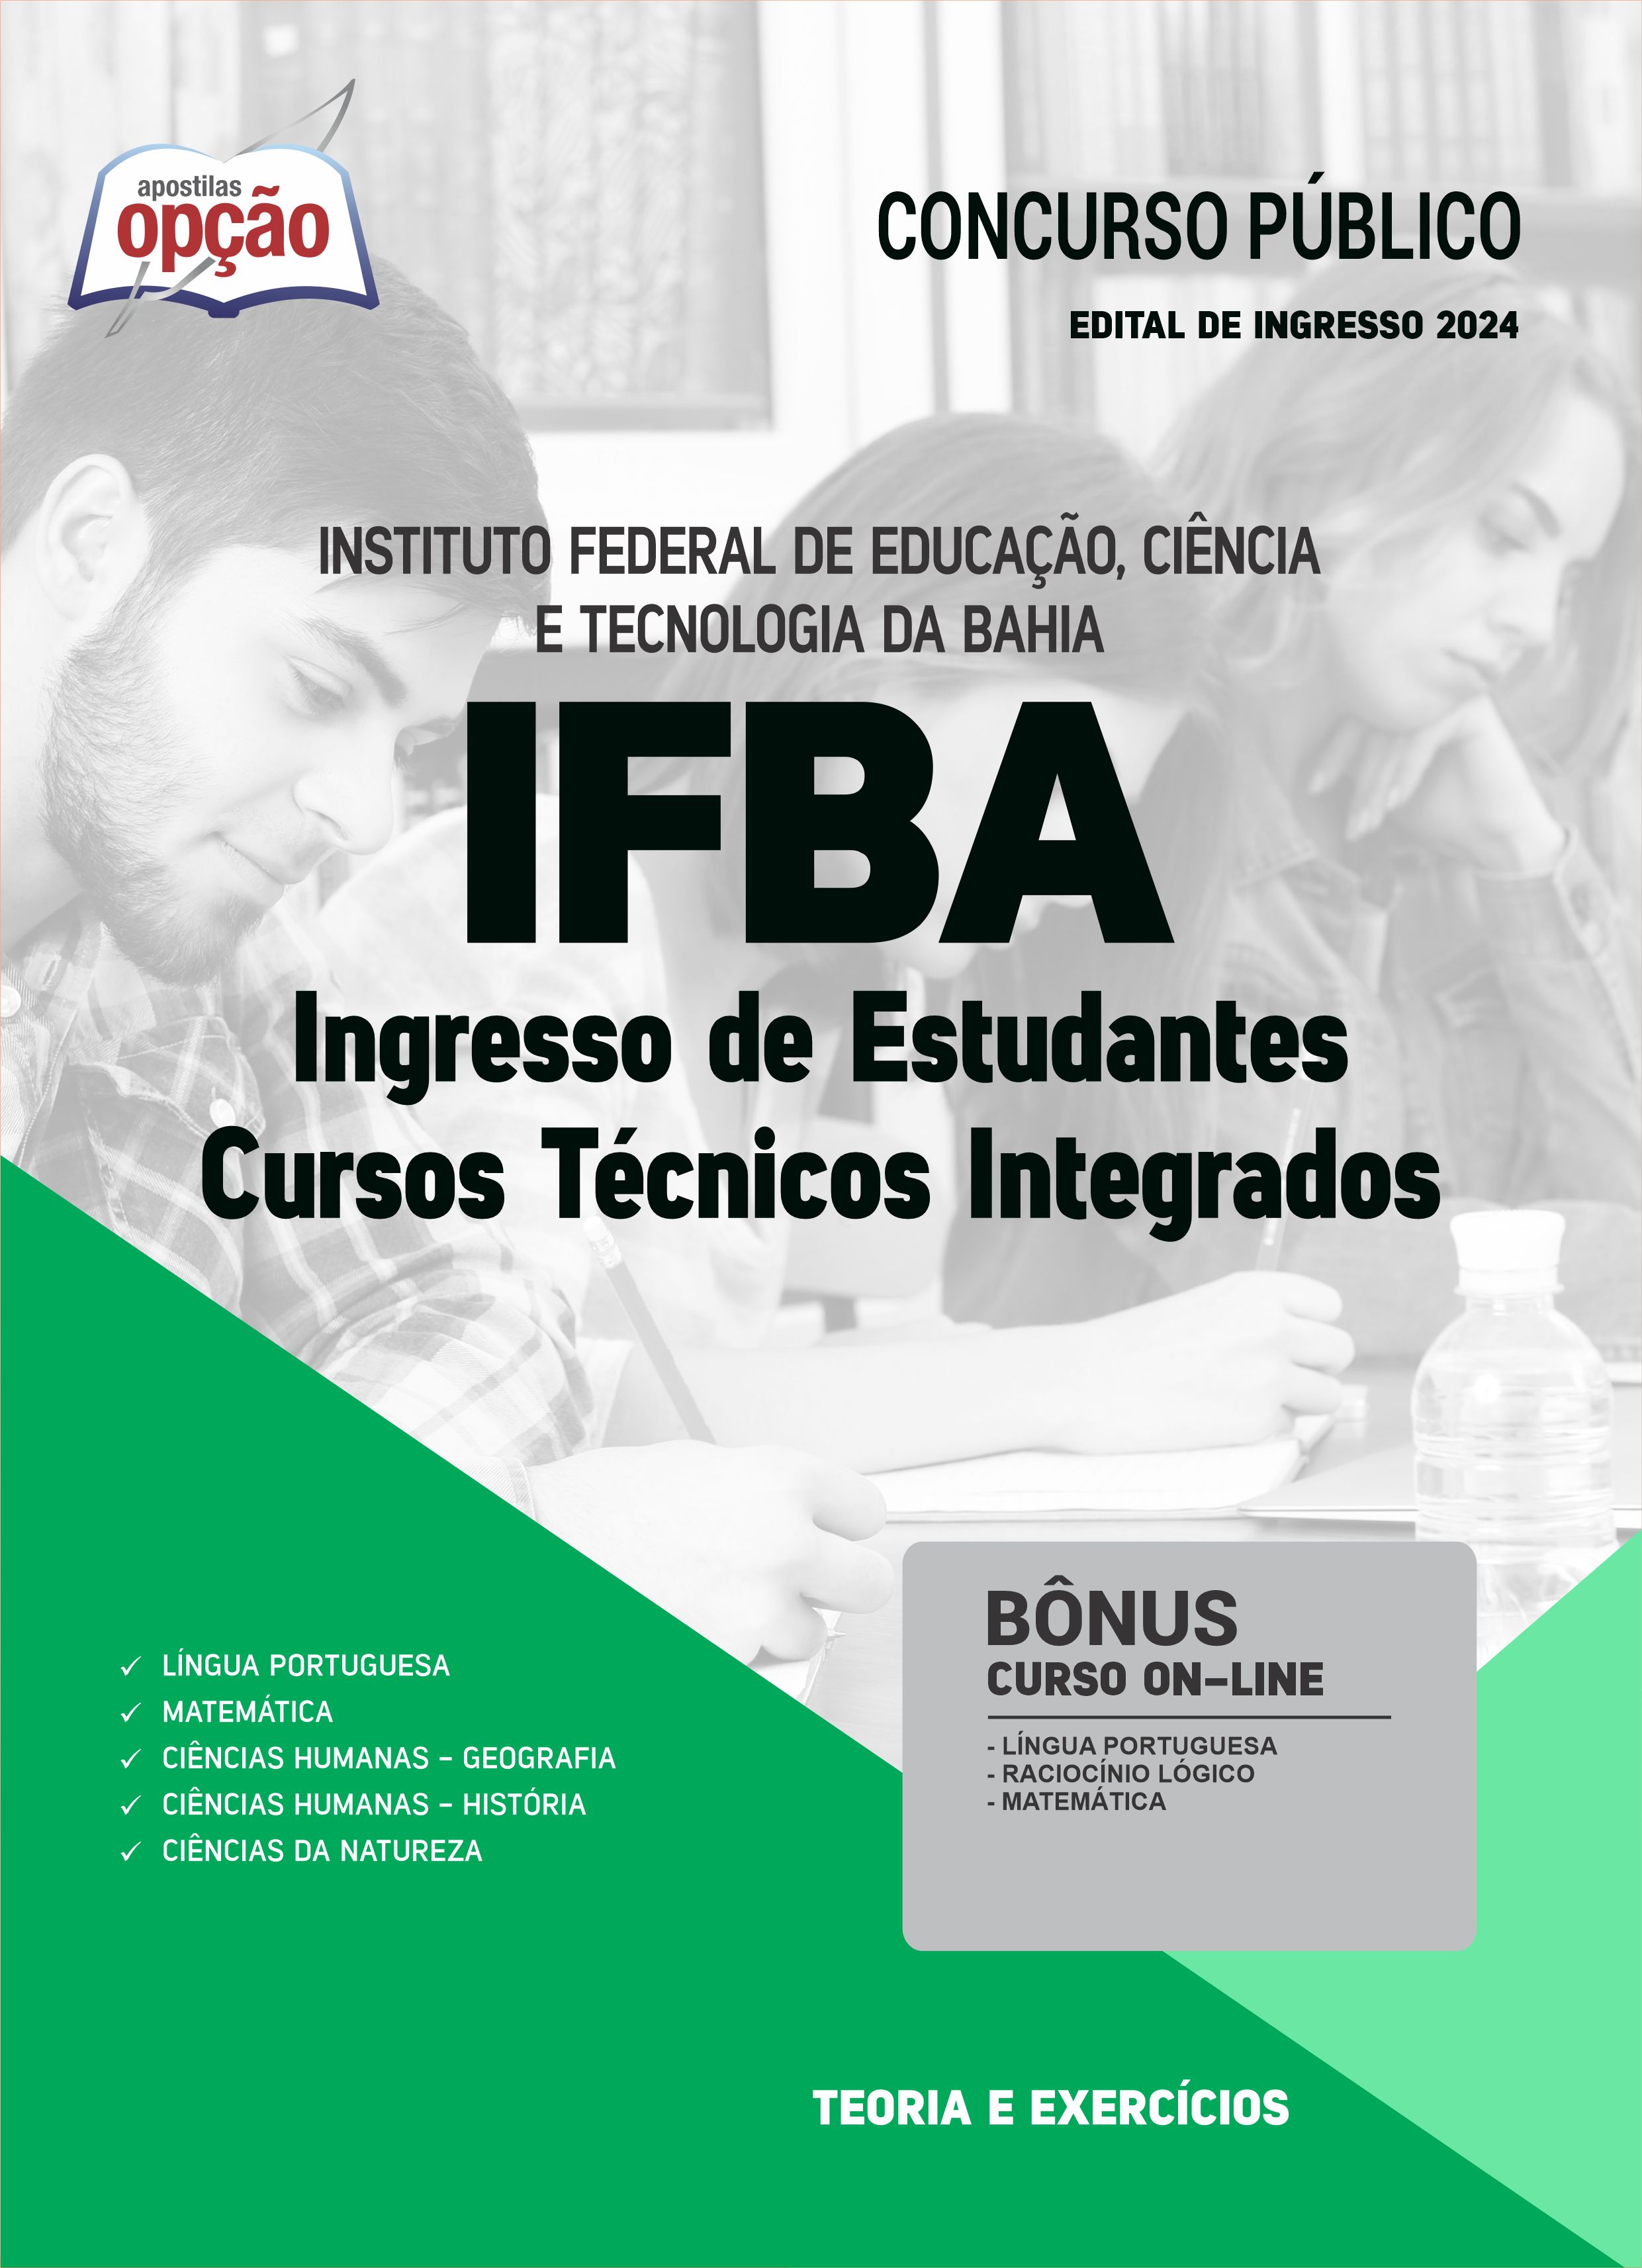 IFBA oferta 2.997 vagas de cursos técnicos gratuitos na BA; veja